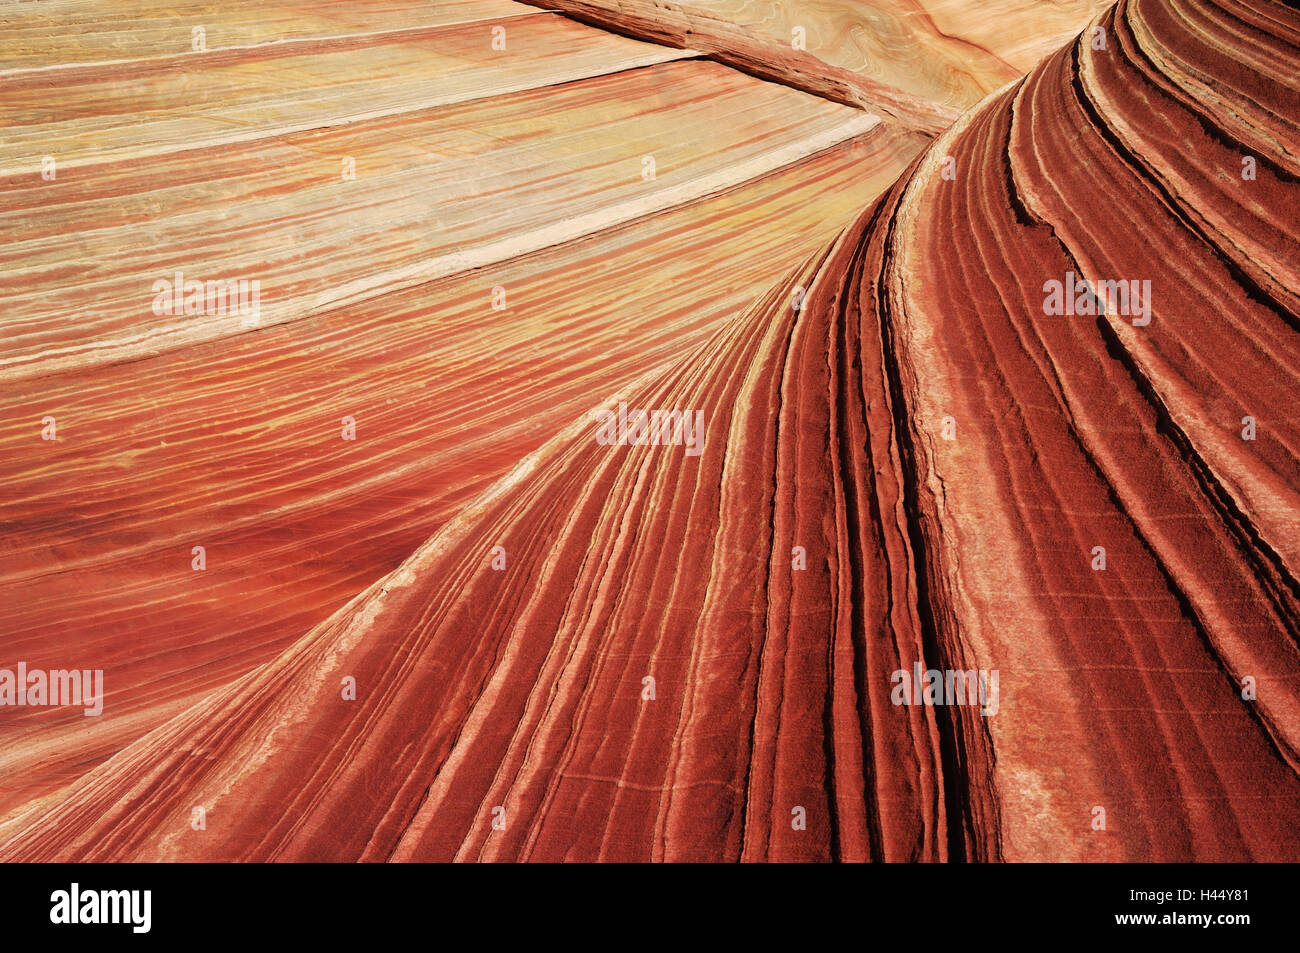 Welle, Detail, USA, Arizona, Utah, Paria Canyon, Vermillion Cliffs Wilderness, Sandstein, Stockfoto